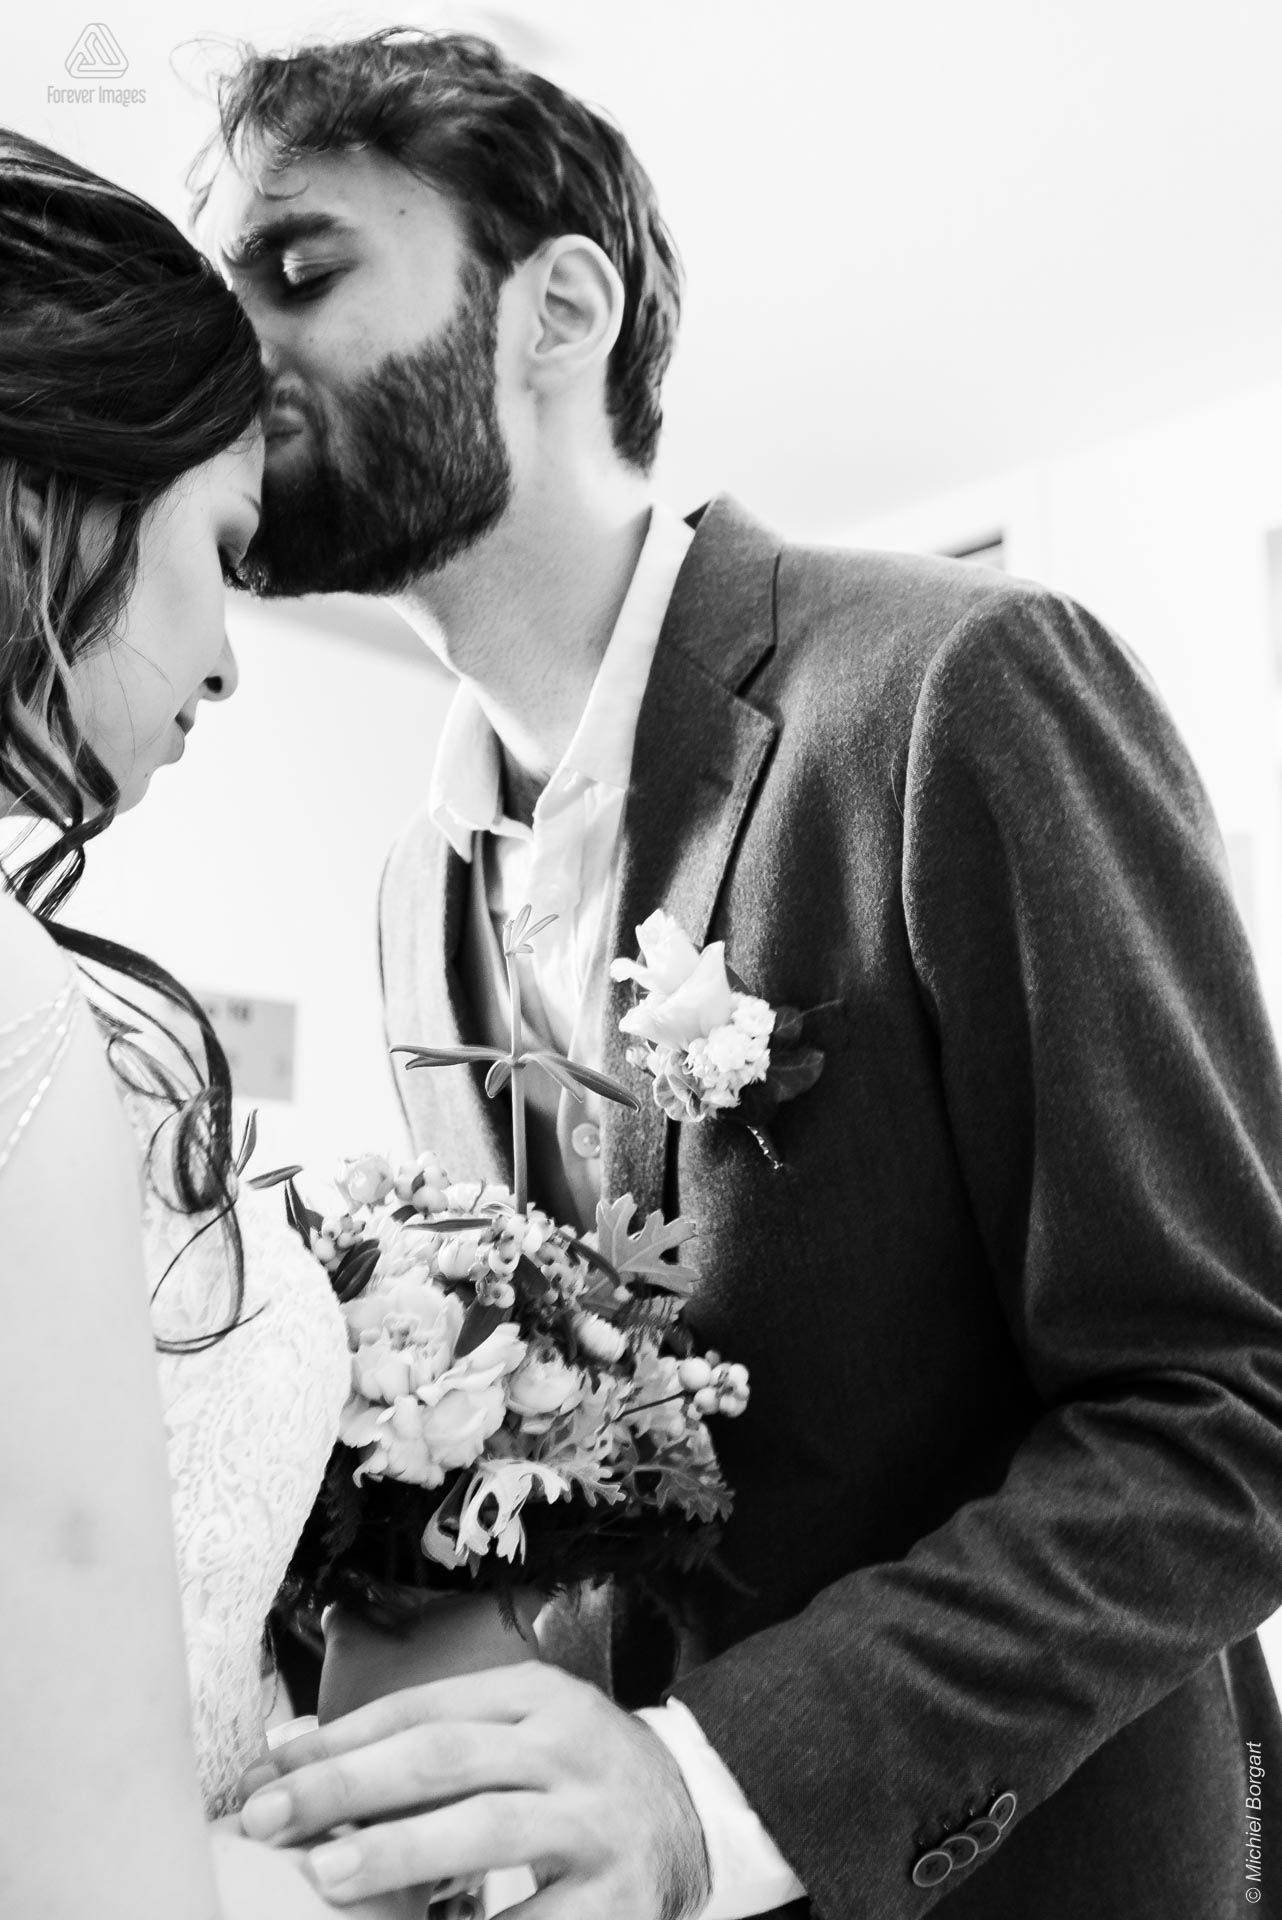 Bruidsfoto zwart-wit emotionele ontmoeting bruidspaar | Bruidsfotograaf Michiel Borgart - Forever Images.